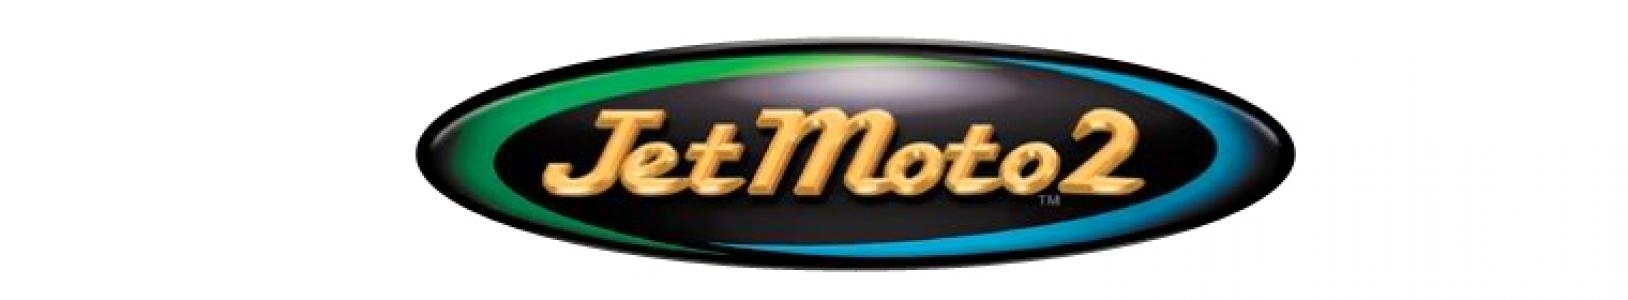 Jet Moto 2 banner